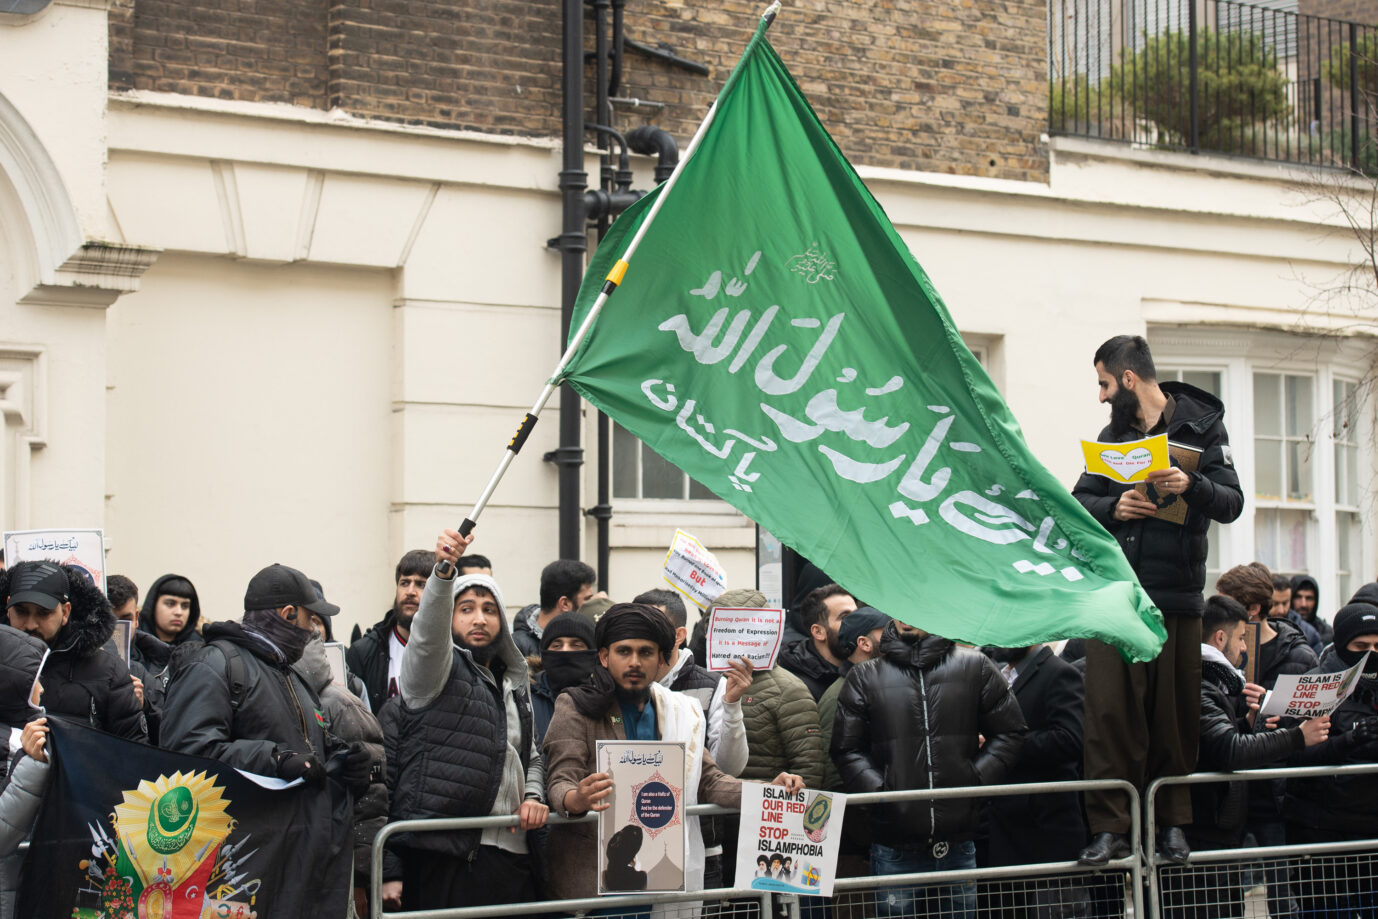 Auf der kleinen schottischen Insel Torsa will der Prediger Yasser al-Habib ein neues „Heimatland“ für Schiiten schaffen. Nun scheitert sein Plan vorerst an dem Eigentümer. Auch die Bewohner der Nachbarinseln sind von dem Asylmigrant, der selbst seinem Geburtsland zu radikal ist, nicht begeistert. Muslime protestieren vor der schwedischen Botschaft in London gegen die Verbrennung des Korans vor der türkischen Botschaft in Stockholm, Schweden, durch den rechtsextremen Aktivisten Rasmus Paludan Muslime protestieren in London gegen vermeintliche Islamophobie: Der Haßprediger Yasser al-Habib möchte auf einer schottischen Insel ein islamisches „Heimatland“ schaffen Foto: picture alliance / Photoshot | - Scharia gilt noch nicht.